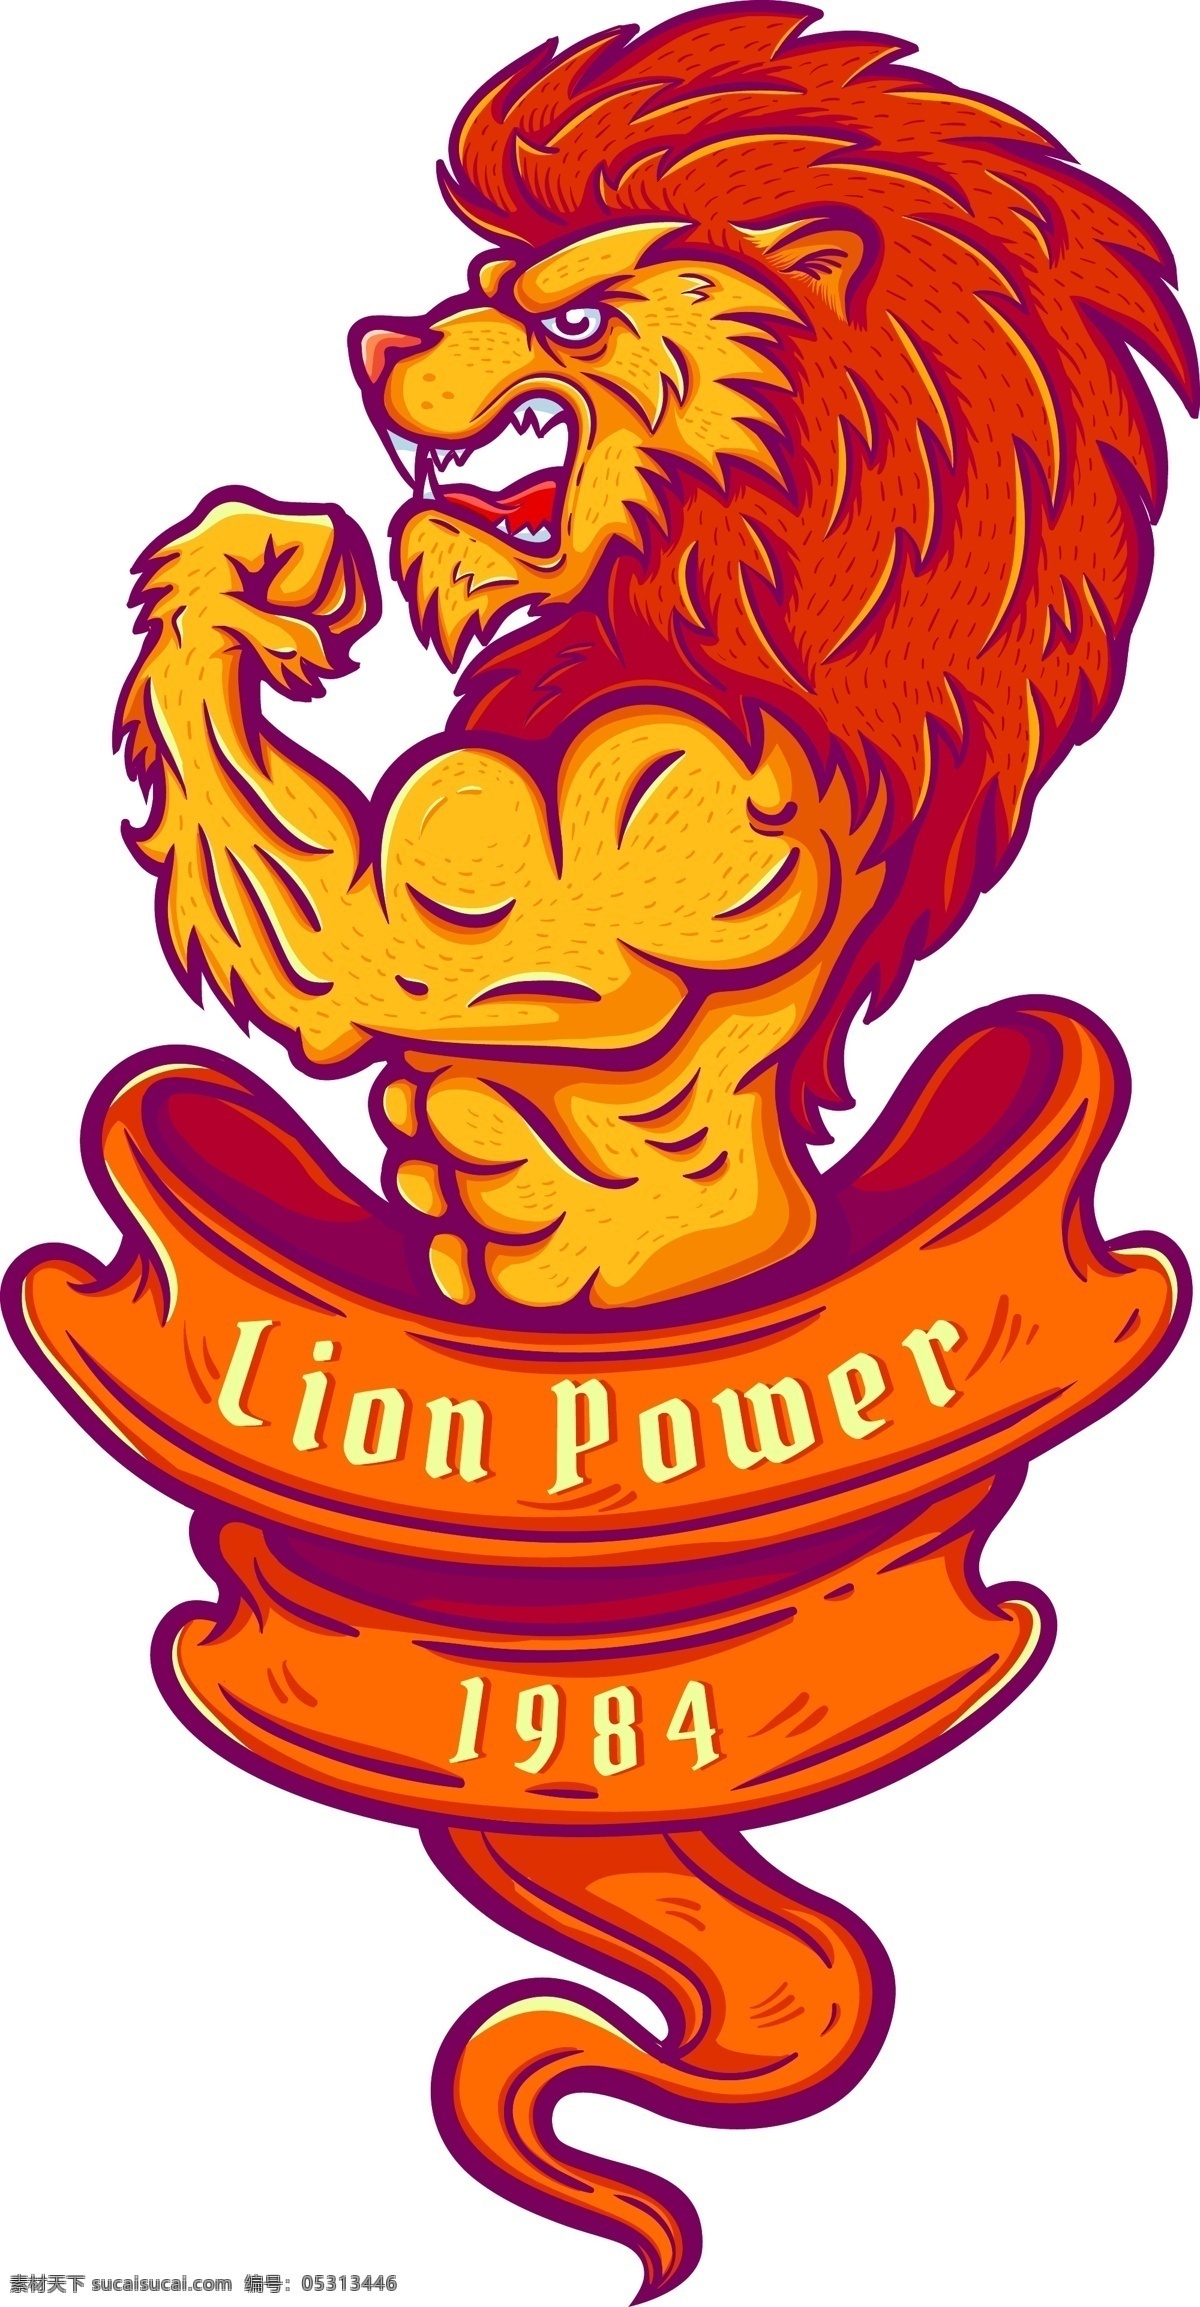 狮子 lion 涂鸦 动物图片 动物 矢量 ai矢量 生物世界 野生动物